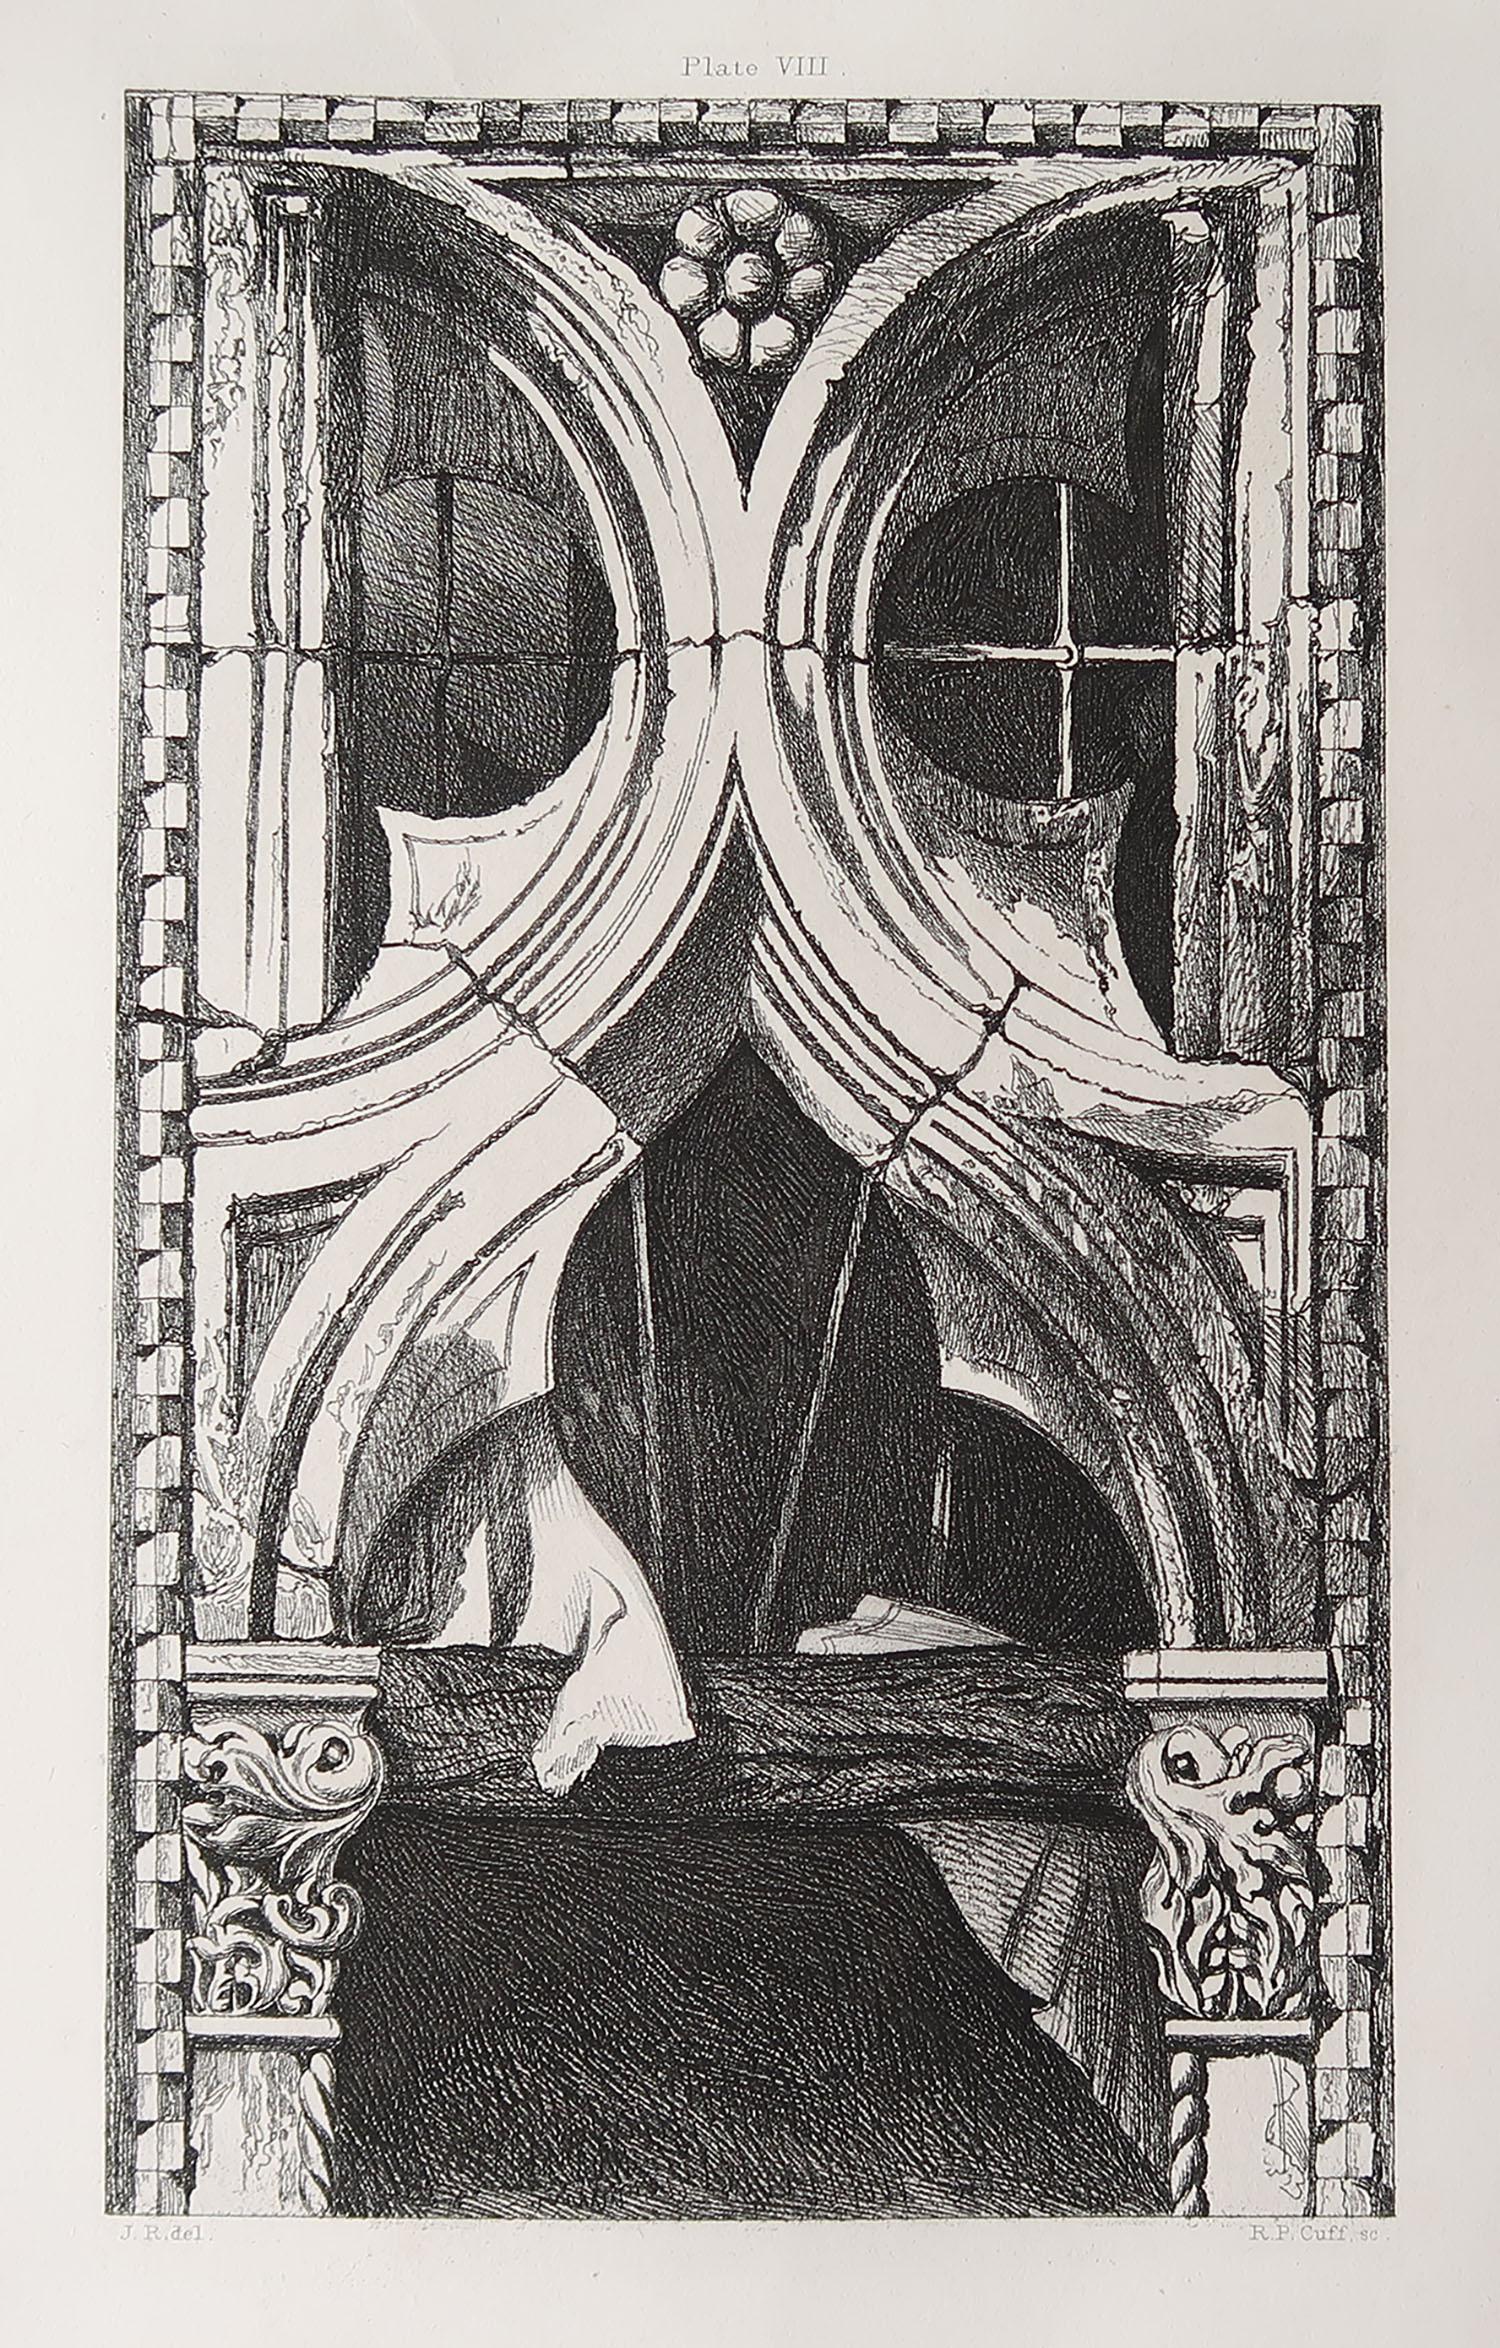 Wunderschöner gotischer Architekturdruck.

Fenster von Ca Foscari, Venedig

Stahlstich von R.P. Manschette nach der Originalzeichnung von John Ruskin

Veröffentlicht, um 1880

Auf geripptem Qualitätspapier

Knick in der rechten unteren